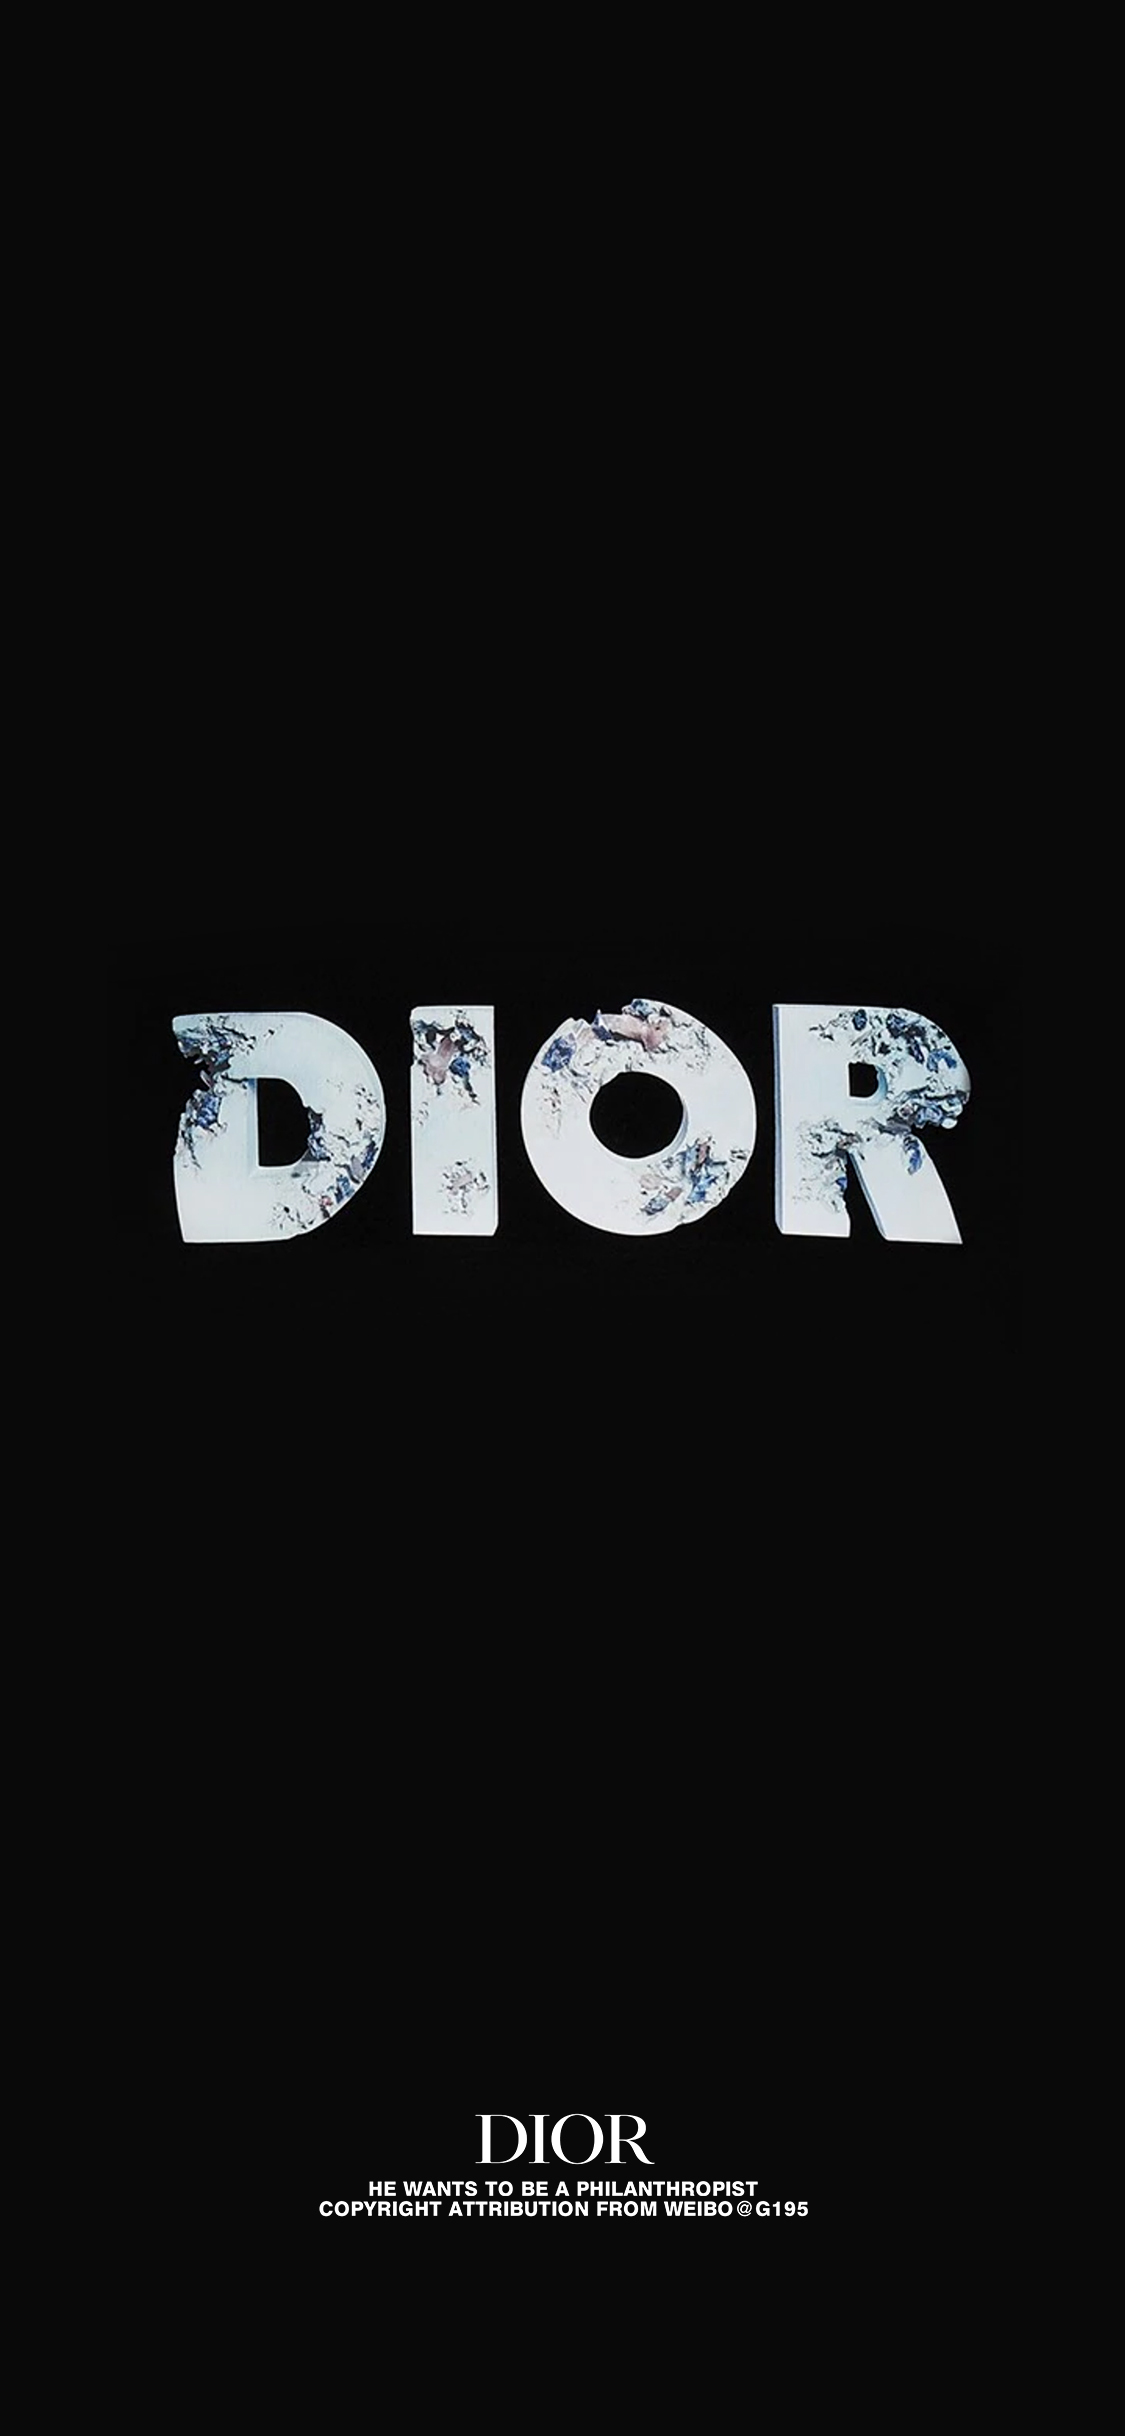 dior壁纸 logo图片